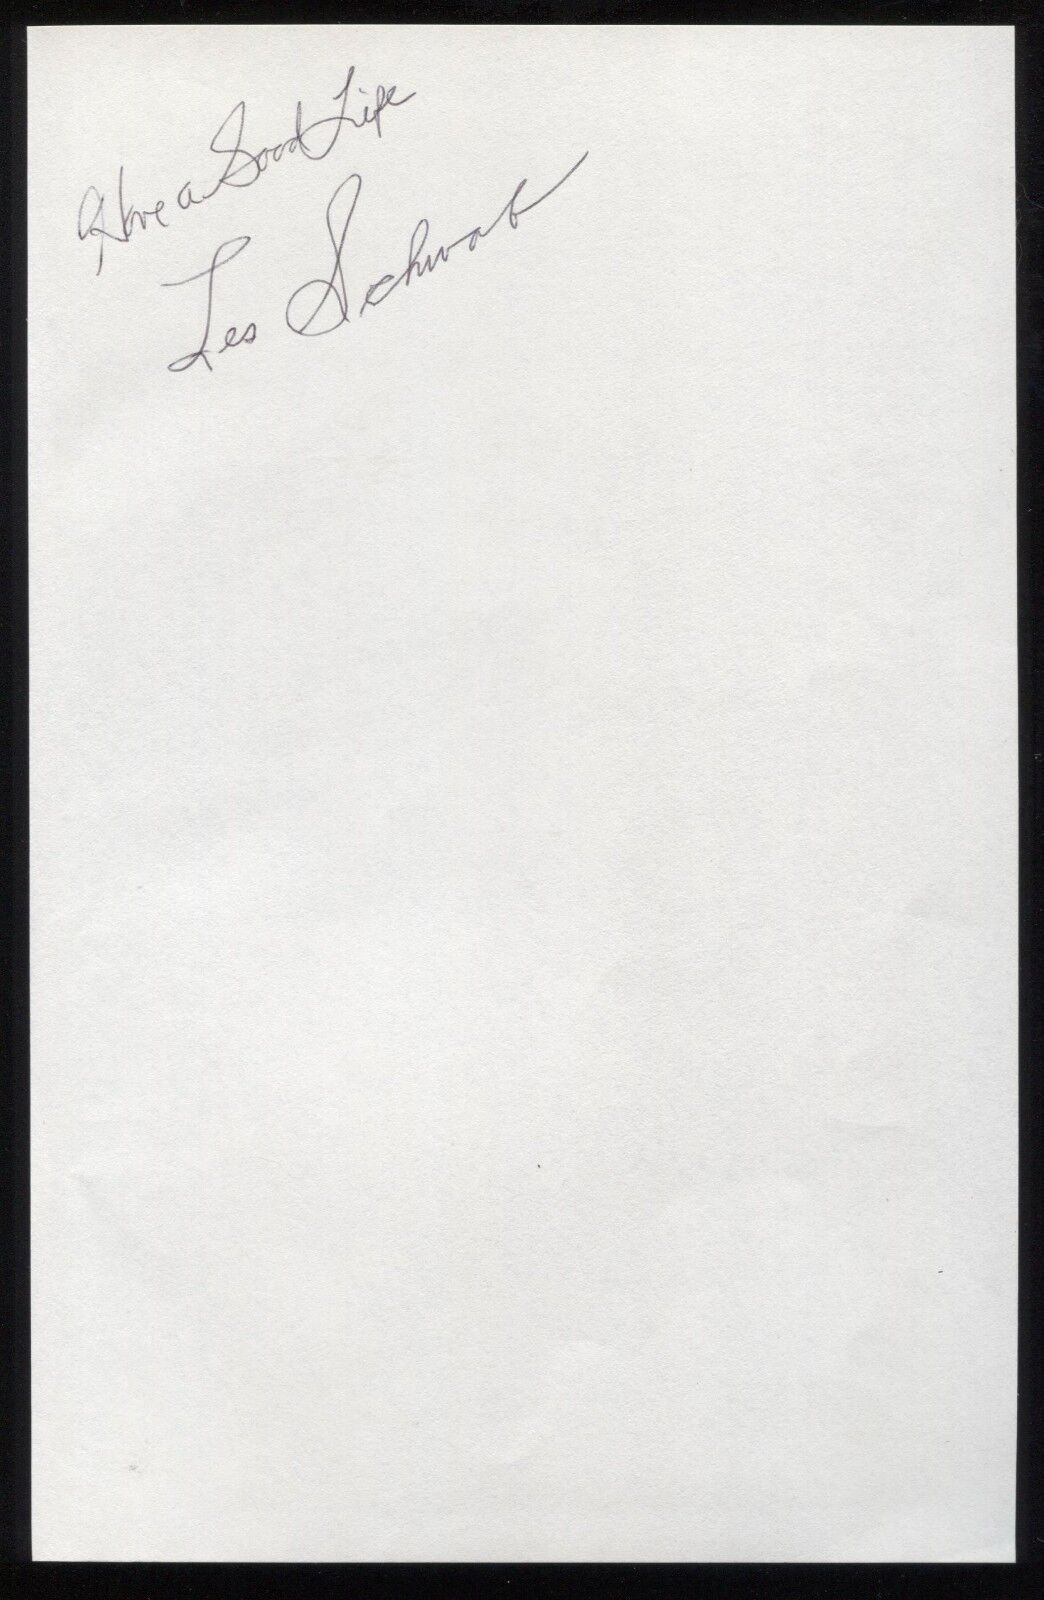 Les Schwab Signed Book Page Cut Autographed Cut Signature 